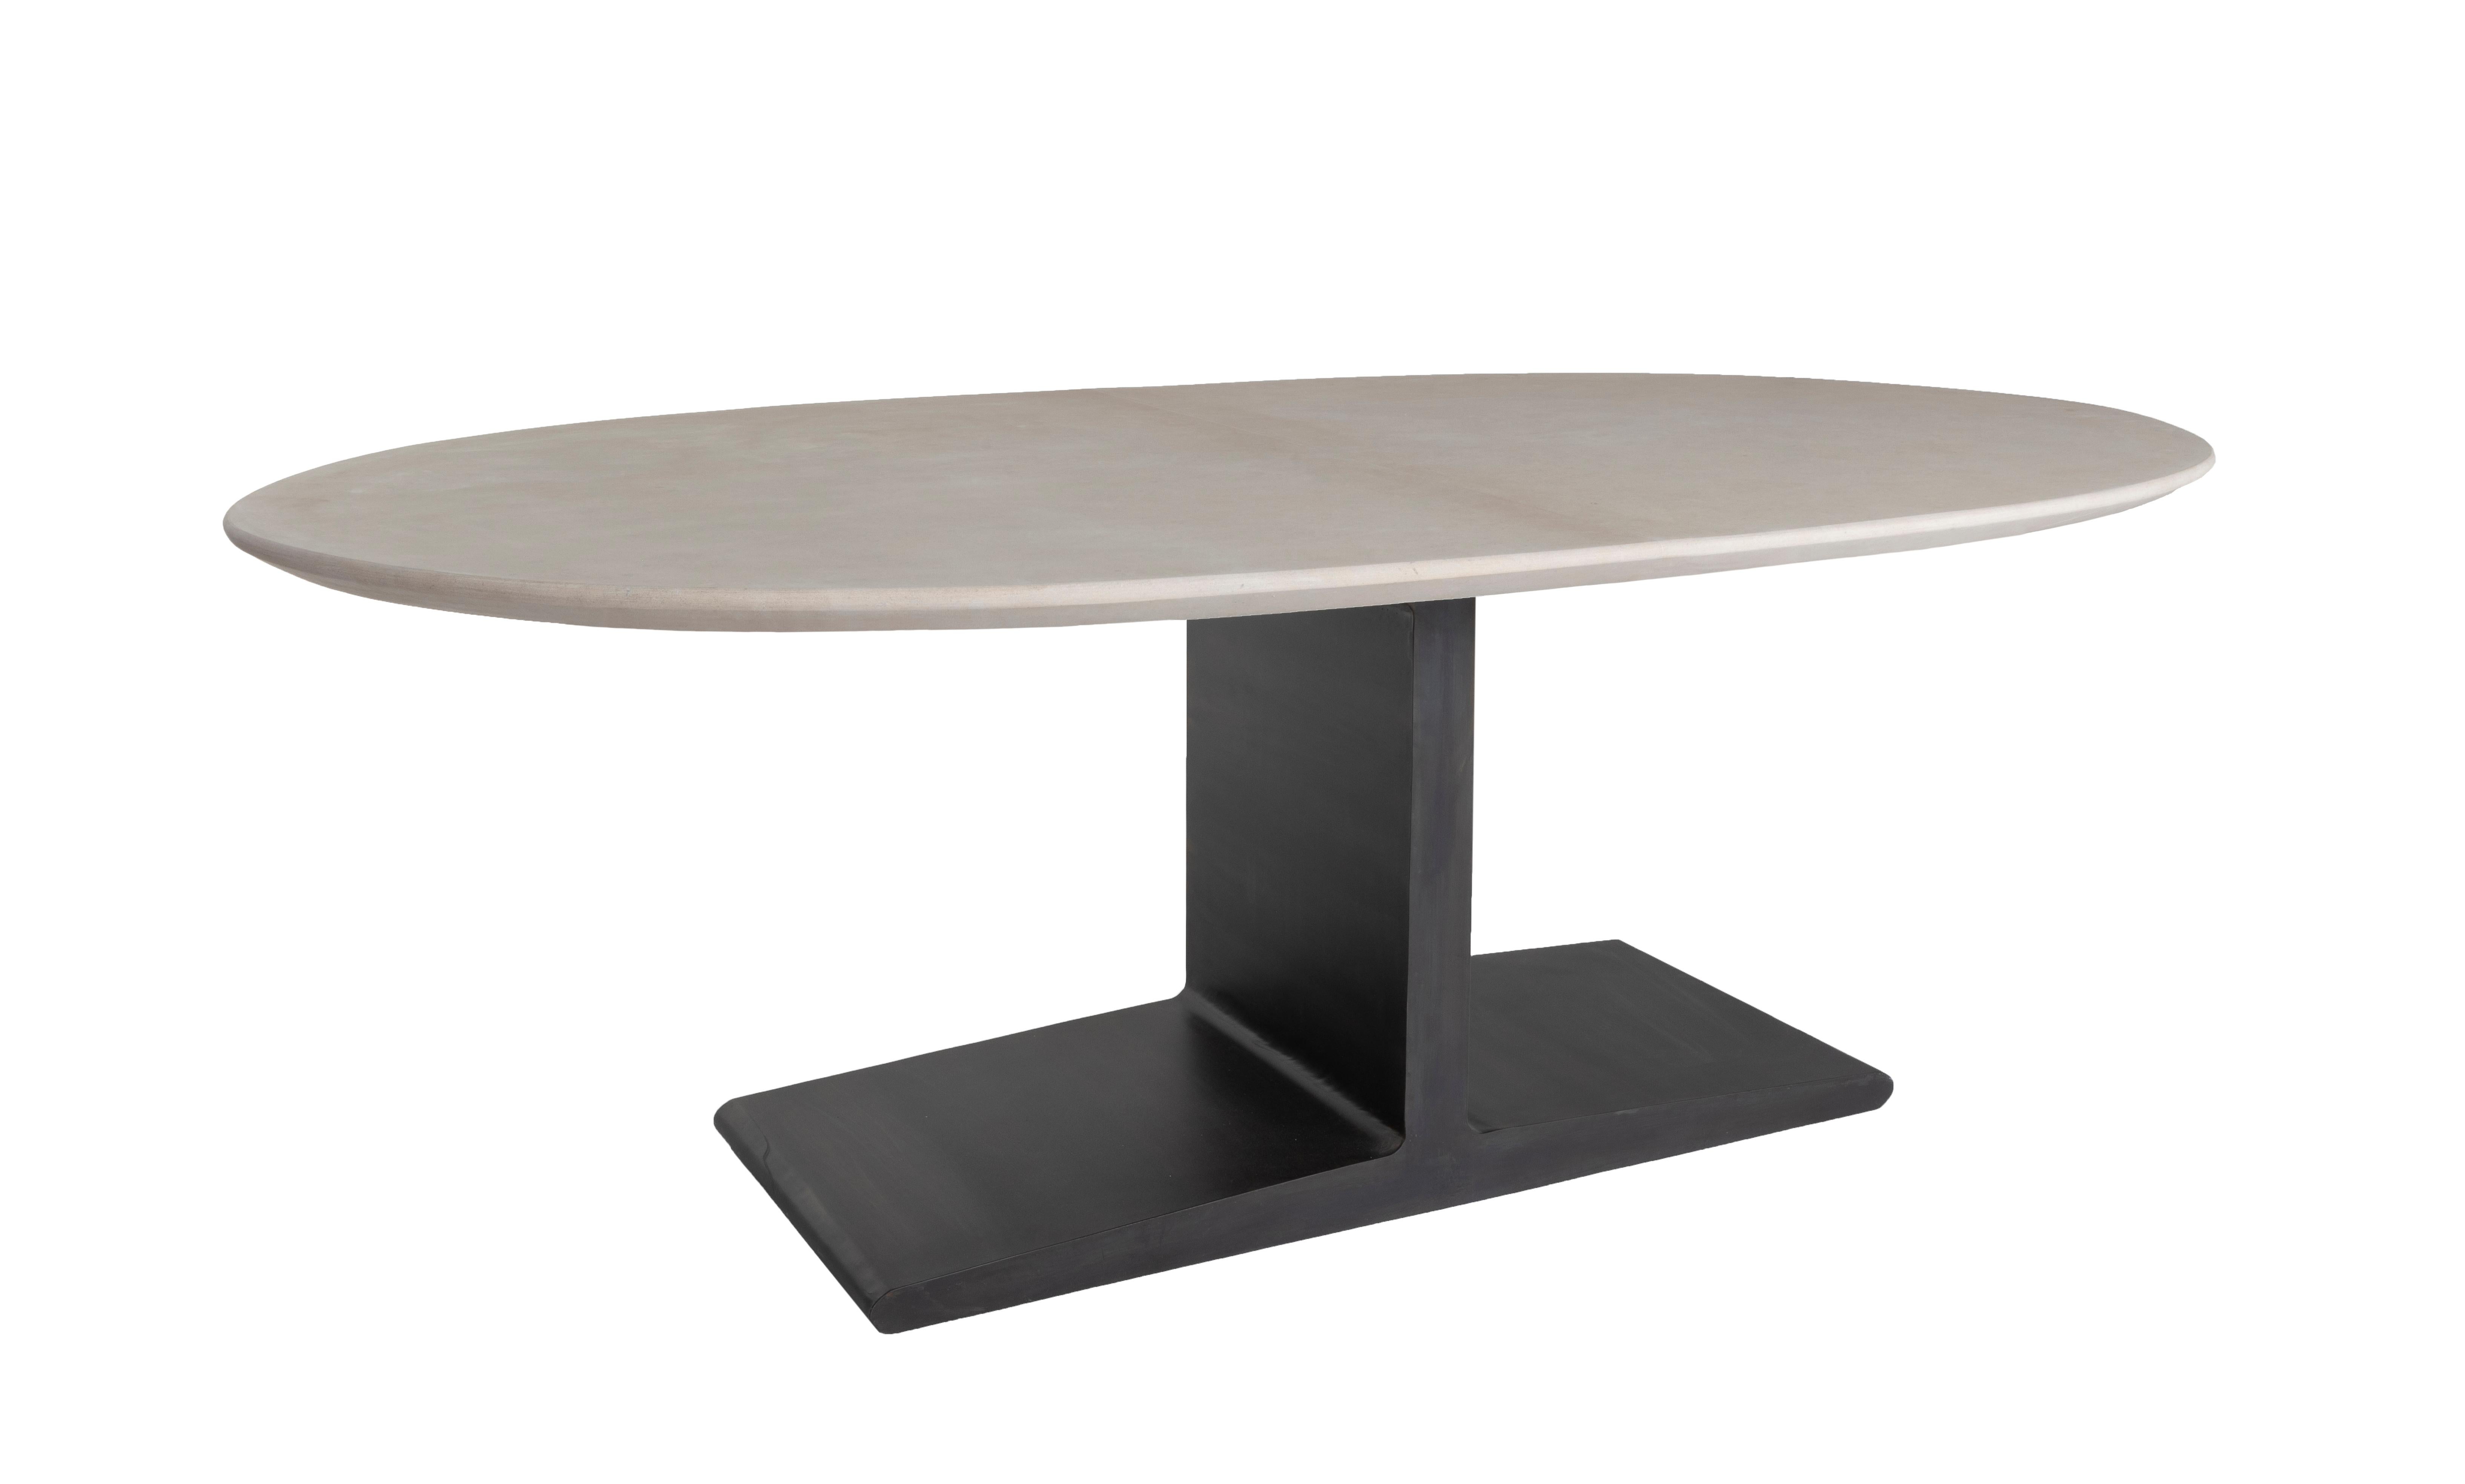 Table de salle à manger ovale à plateau en pierre calcaire sur piétement en acier I+I.

Conçue par Brendan Bass pour la Collection Design/One, en utilisant des matériaux et des textures de haute qualité. Tous les matériaux proviennent de